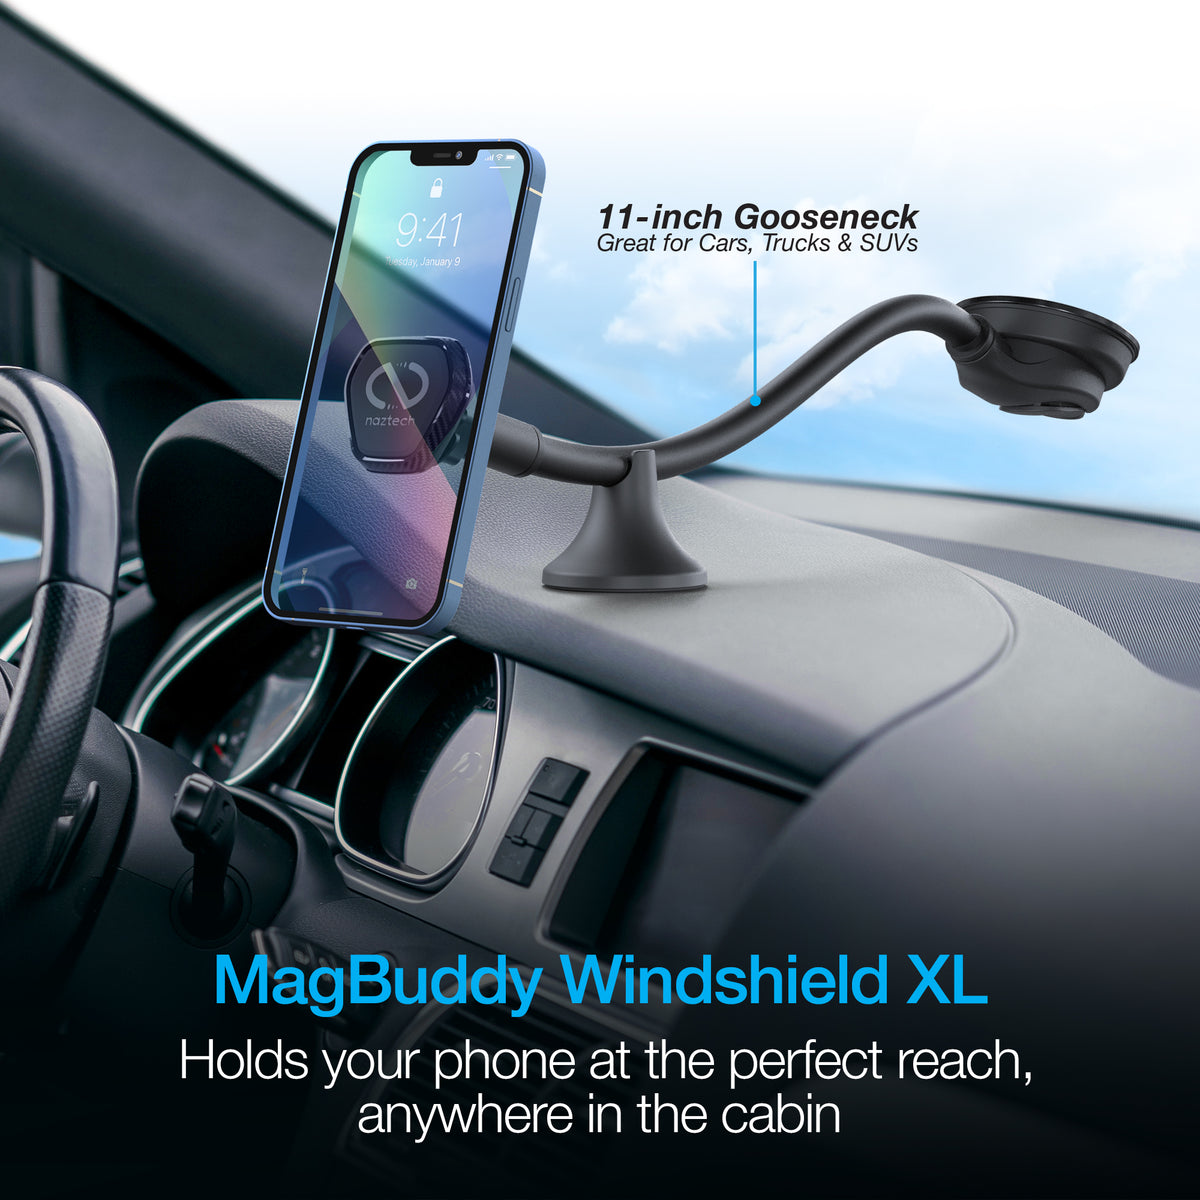 Magnet Windshield Holder for Smartphone